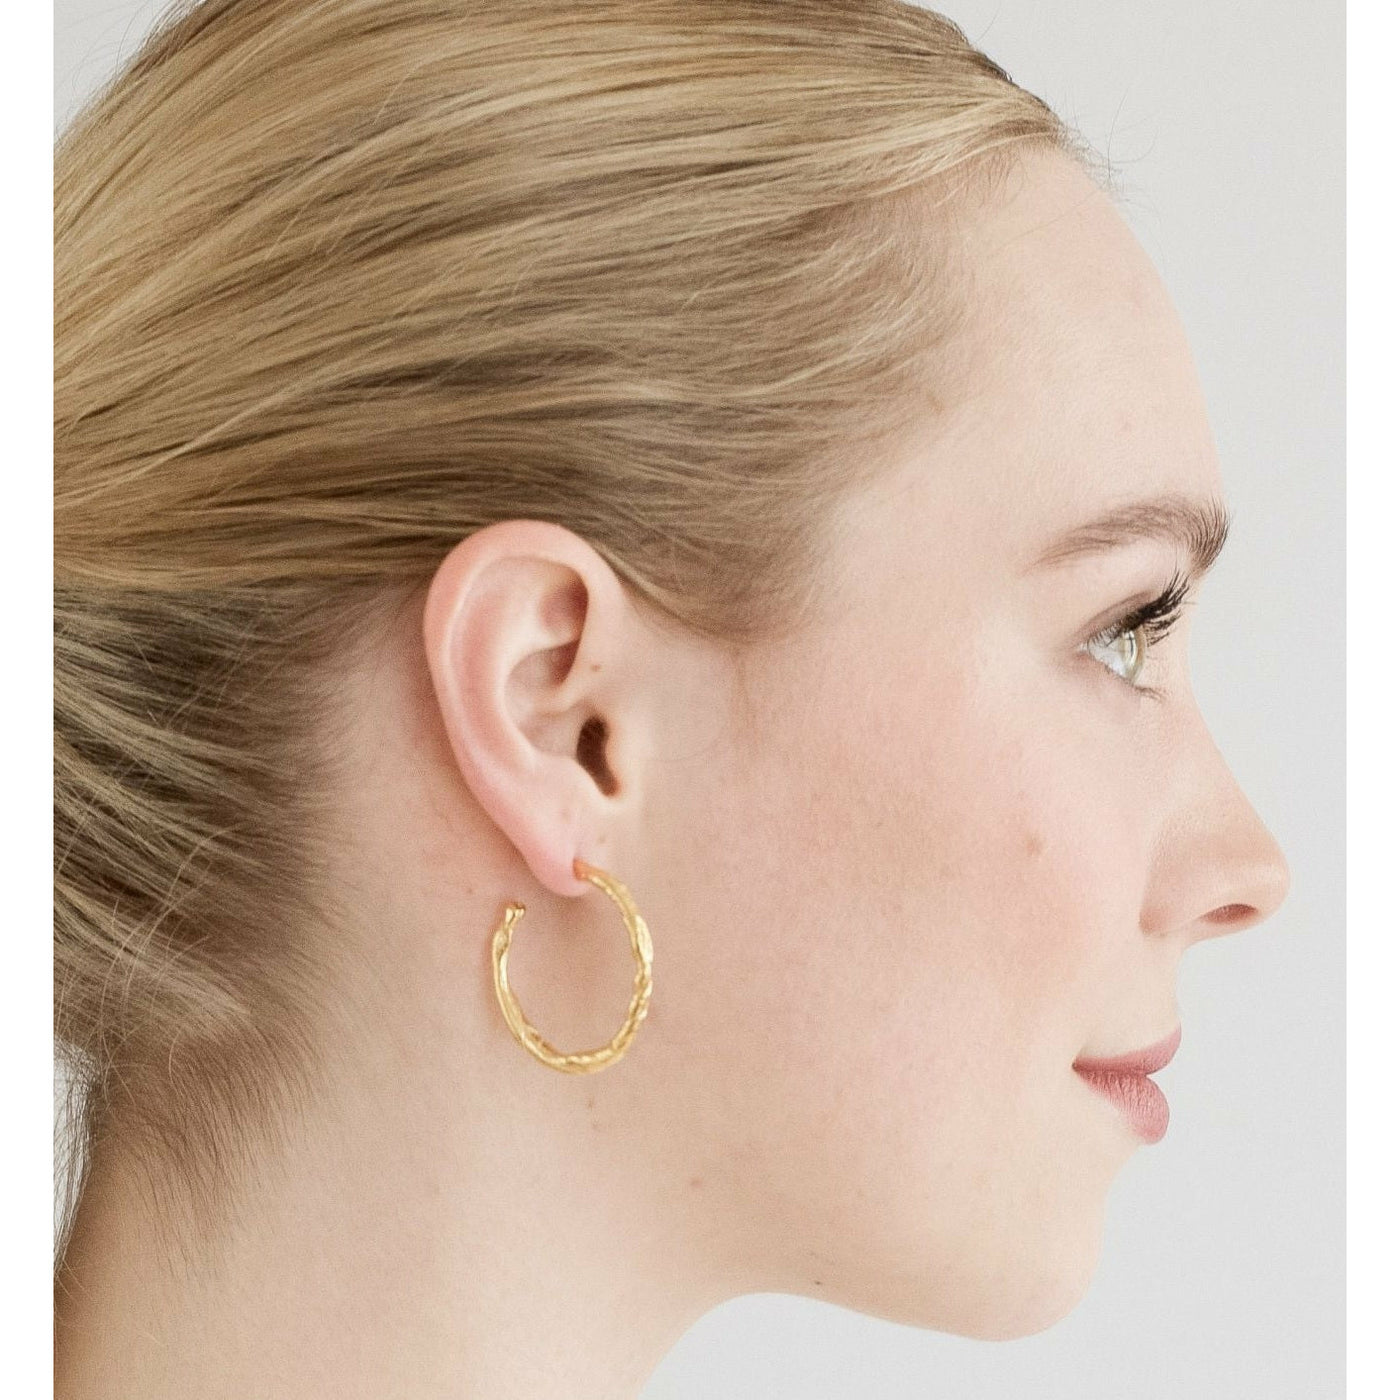 FEVIK // Large hoop earrings gold-plated